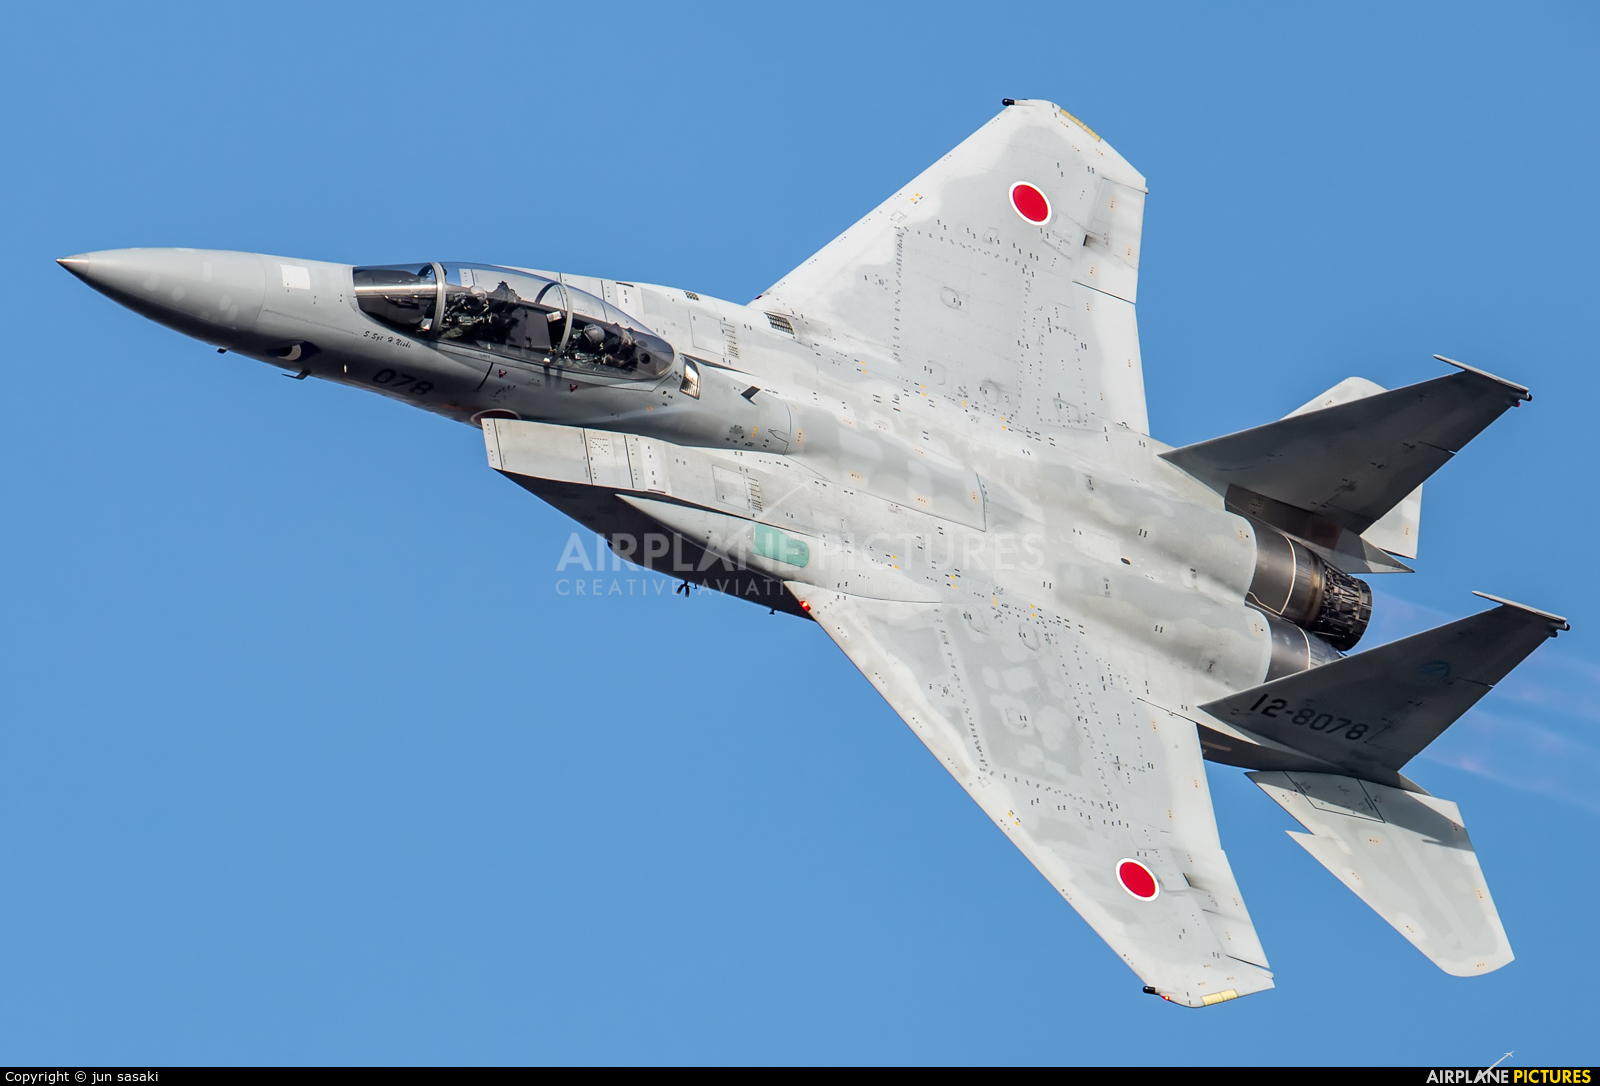 Japan - Air Self Defence Force 12-8078 aircraft at Gifu AB